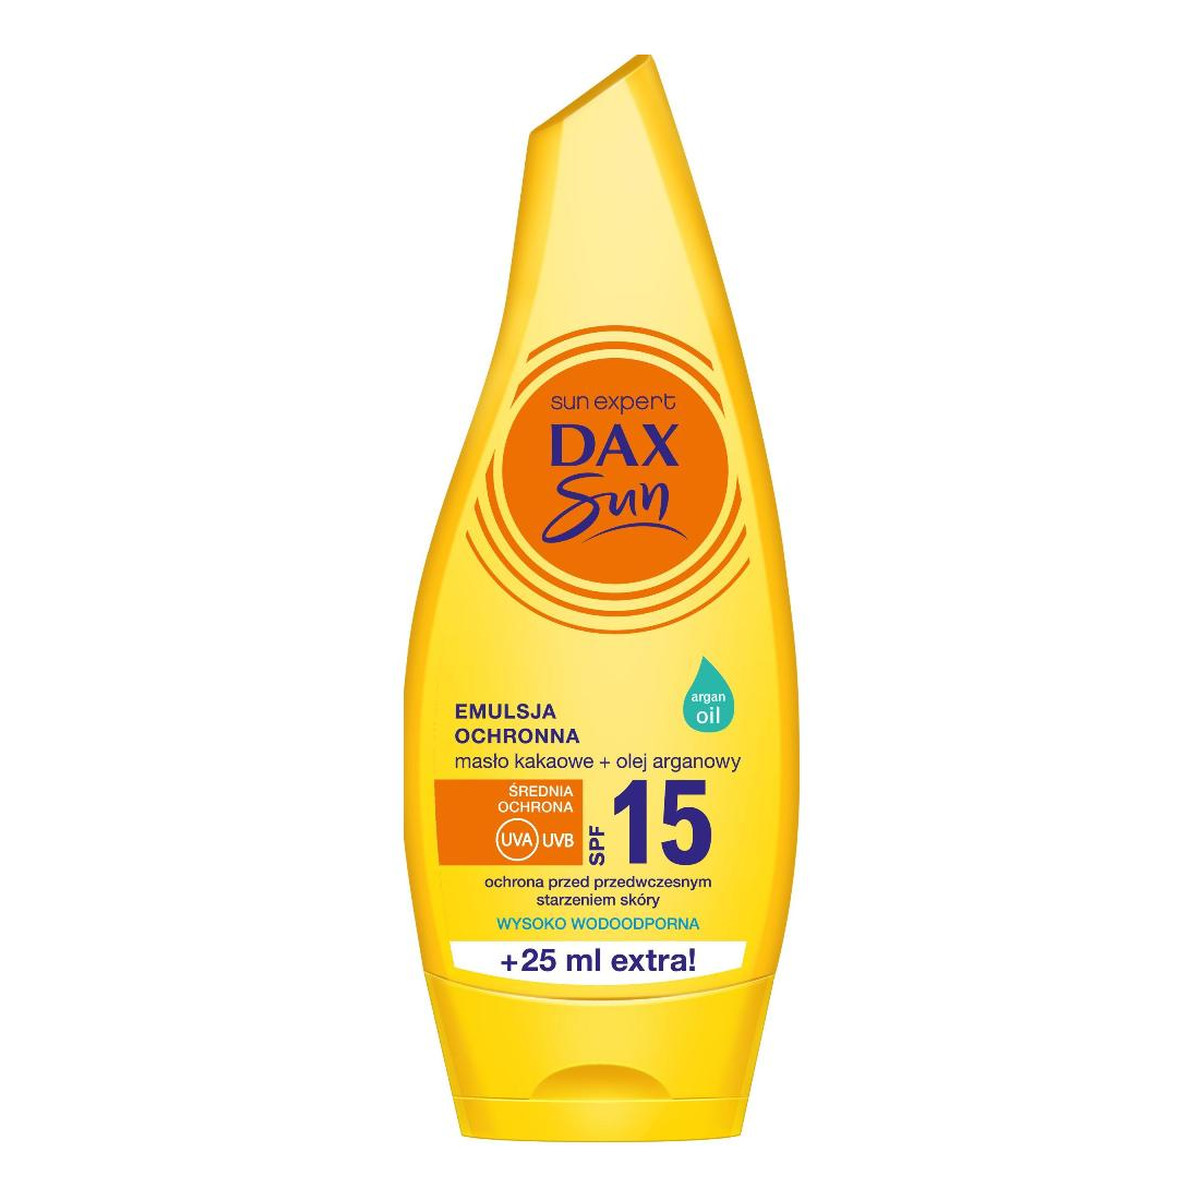 Dax Sun SPF15 emulsja ochronna z masłem kakaowym i olejem arganowym 175ml